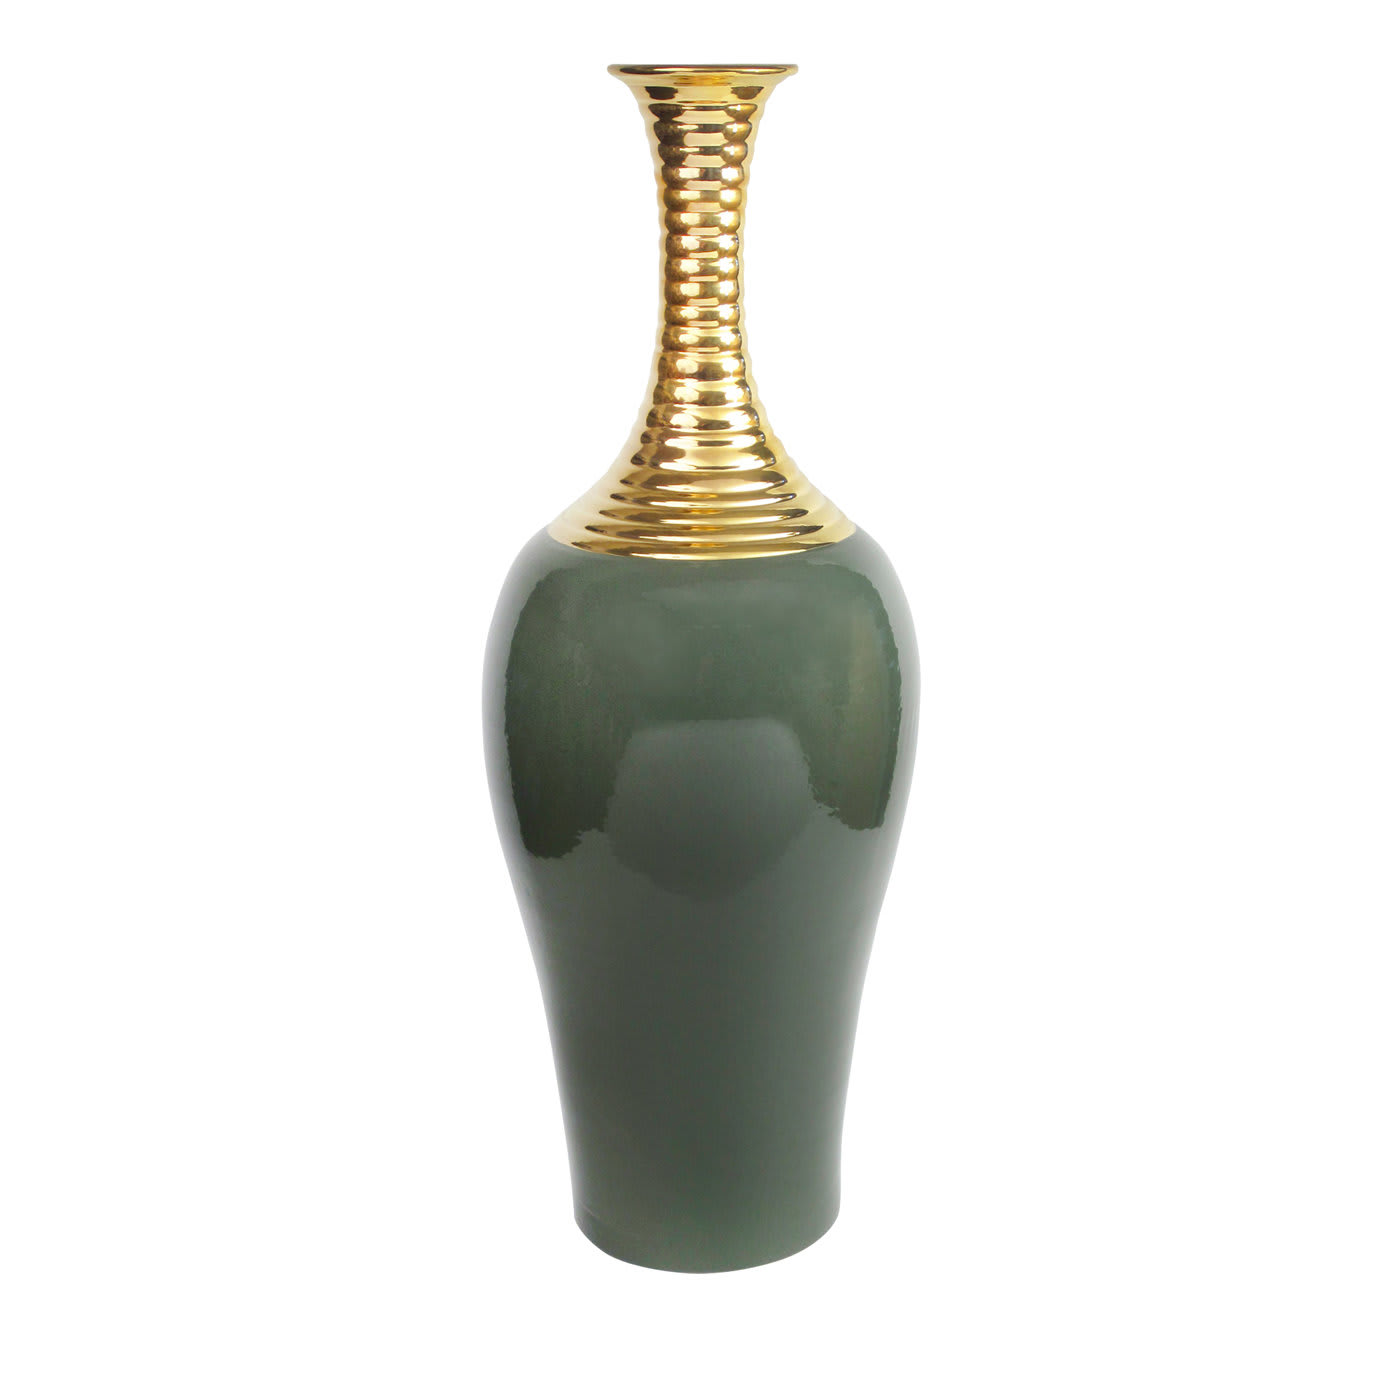 Gold and Green Vase - Sambuco